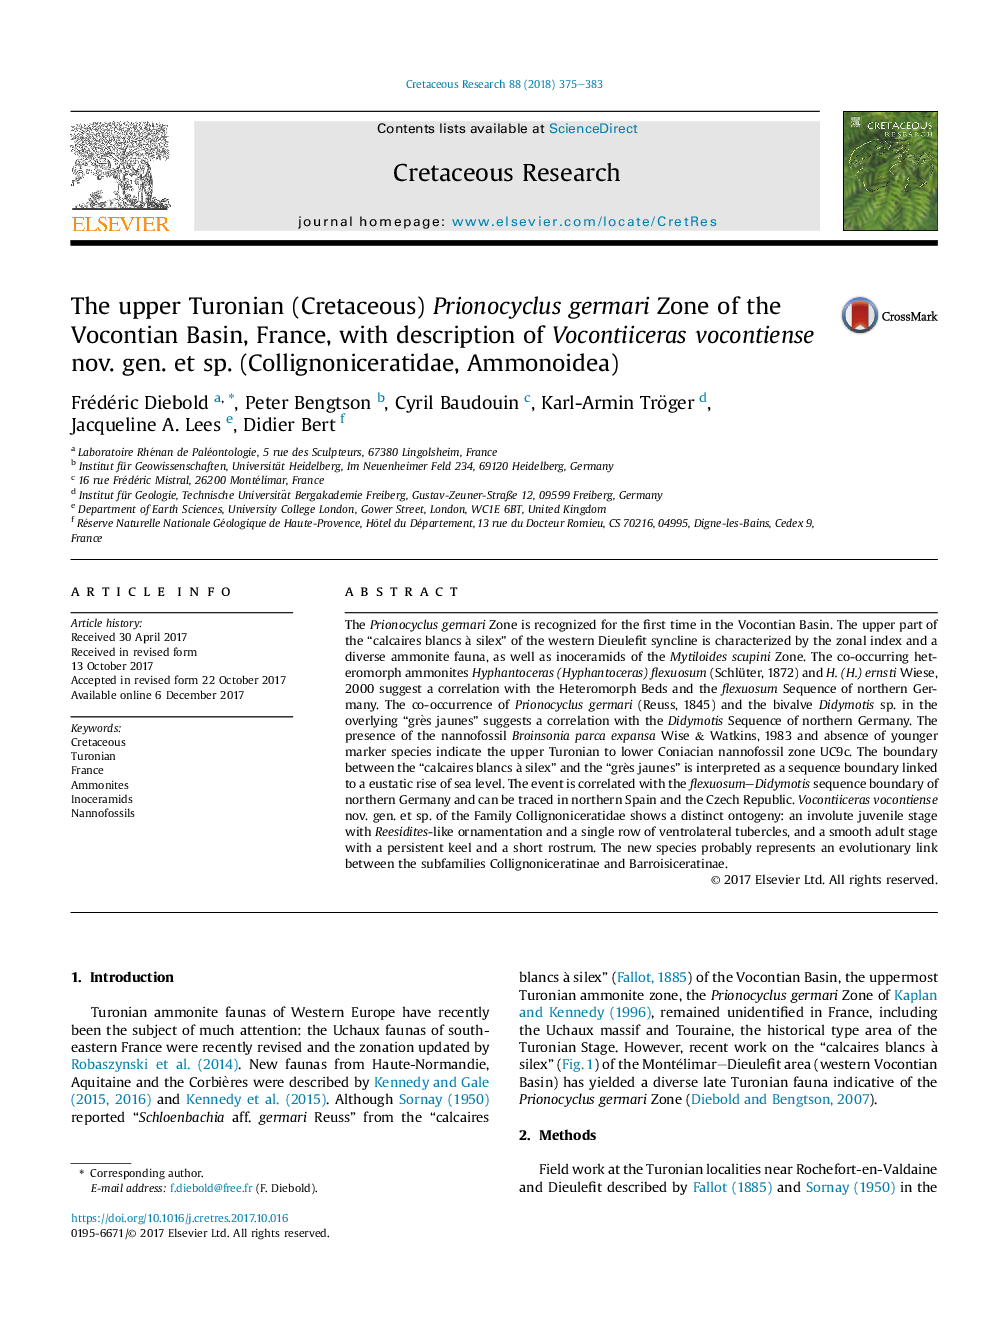 The upper Turonian (Cretaceous) Prionocyclus germari Zone of the Vocontian Basin, France, with description of Vocontiiceras vocontiense nov. gen. et sp. (Collignoniceratidae, Ammonoidea)